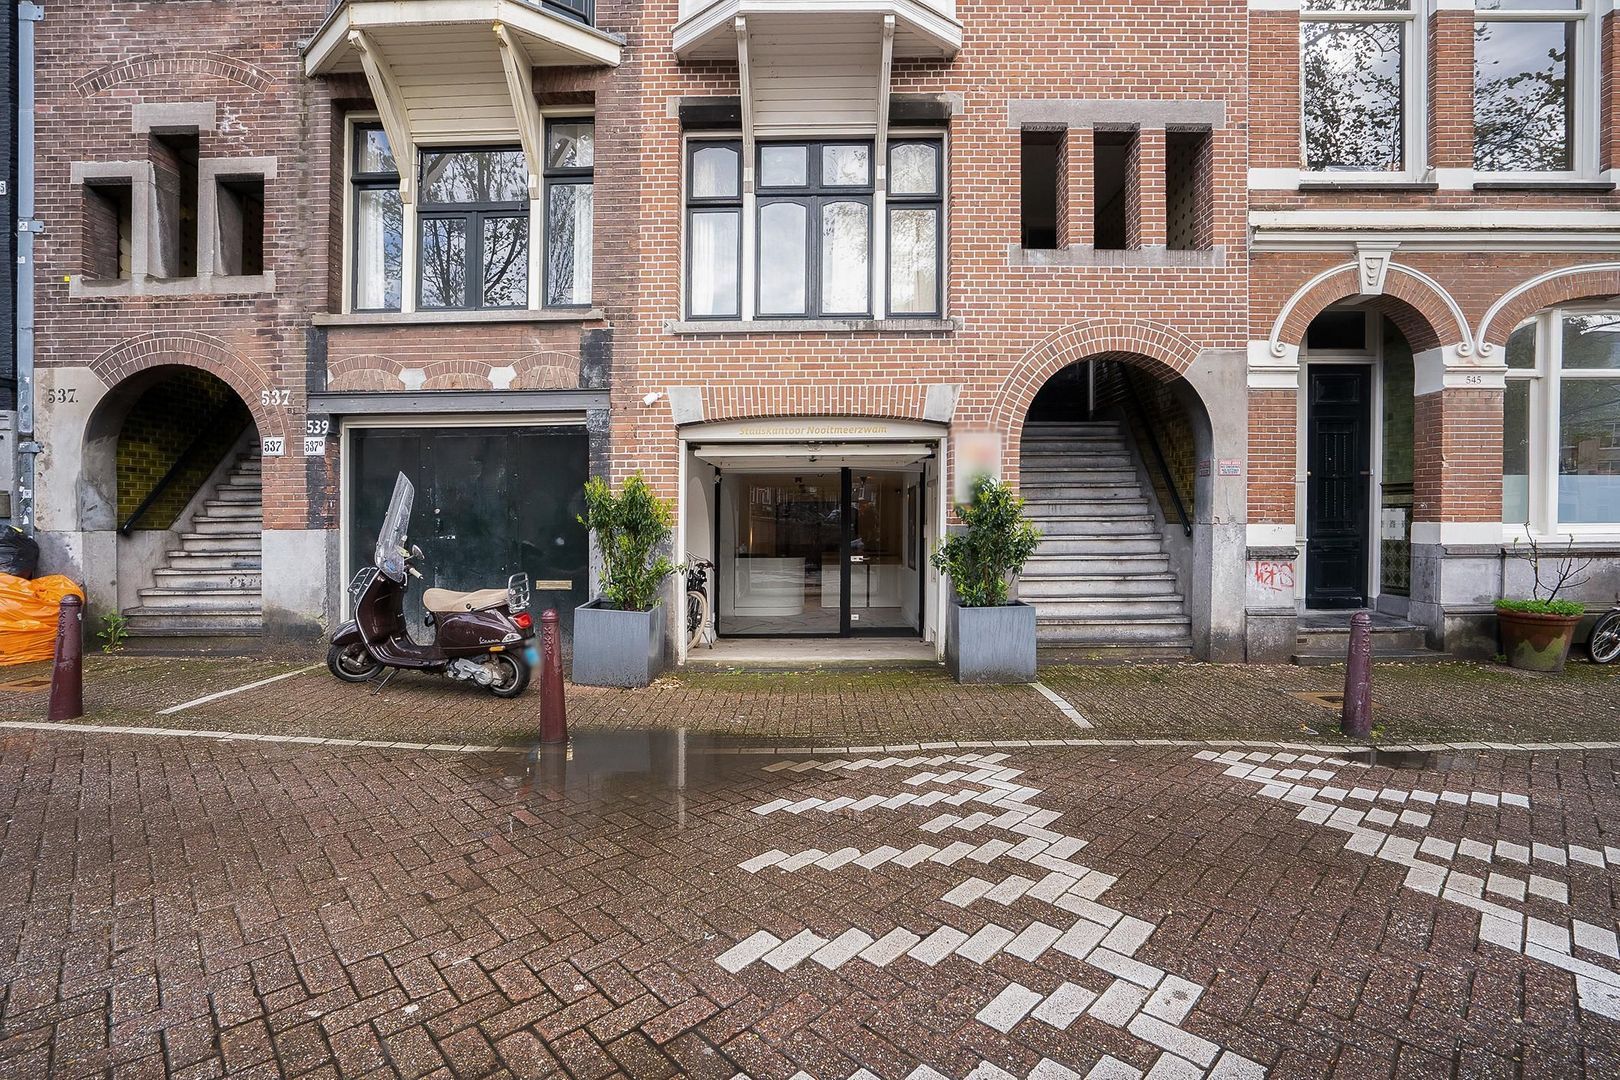 Bekijk foto 1/25 van apartment in Amsterdam